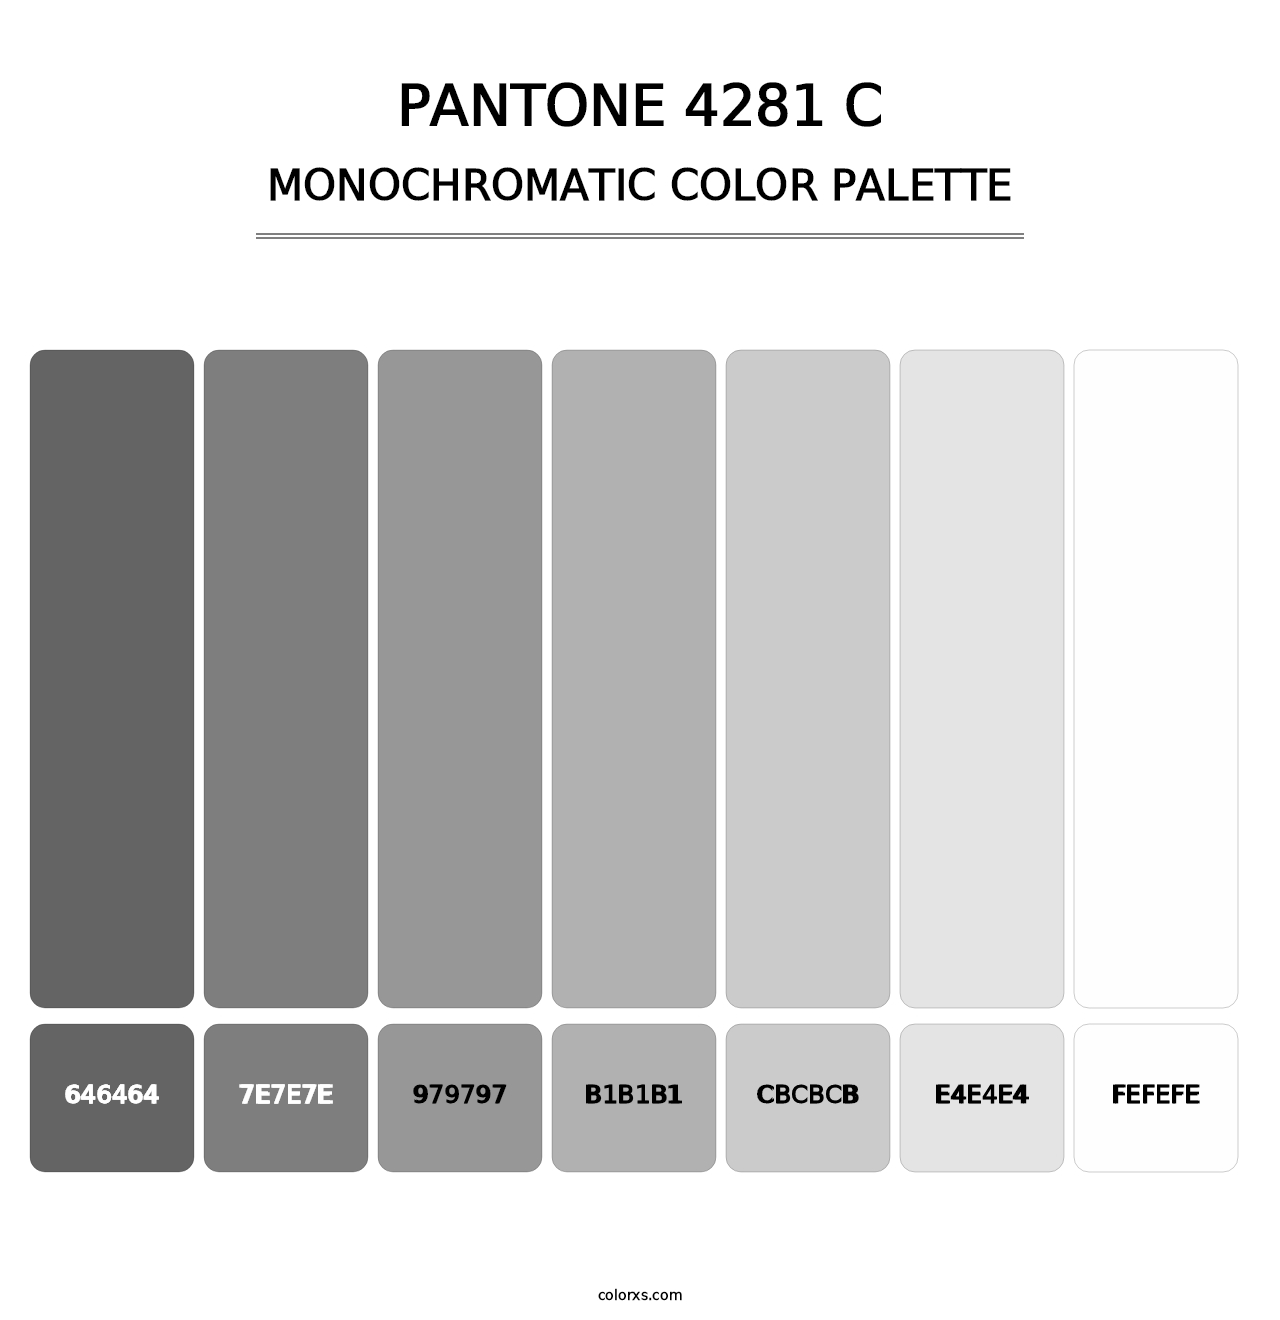 PANTONE 4281 C - Monochromatic Color Palette